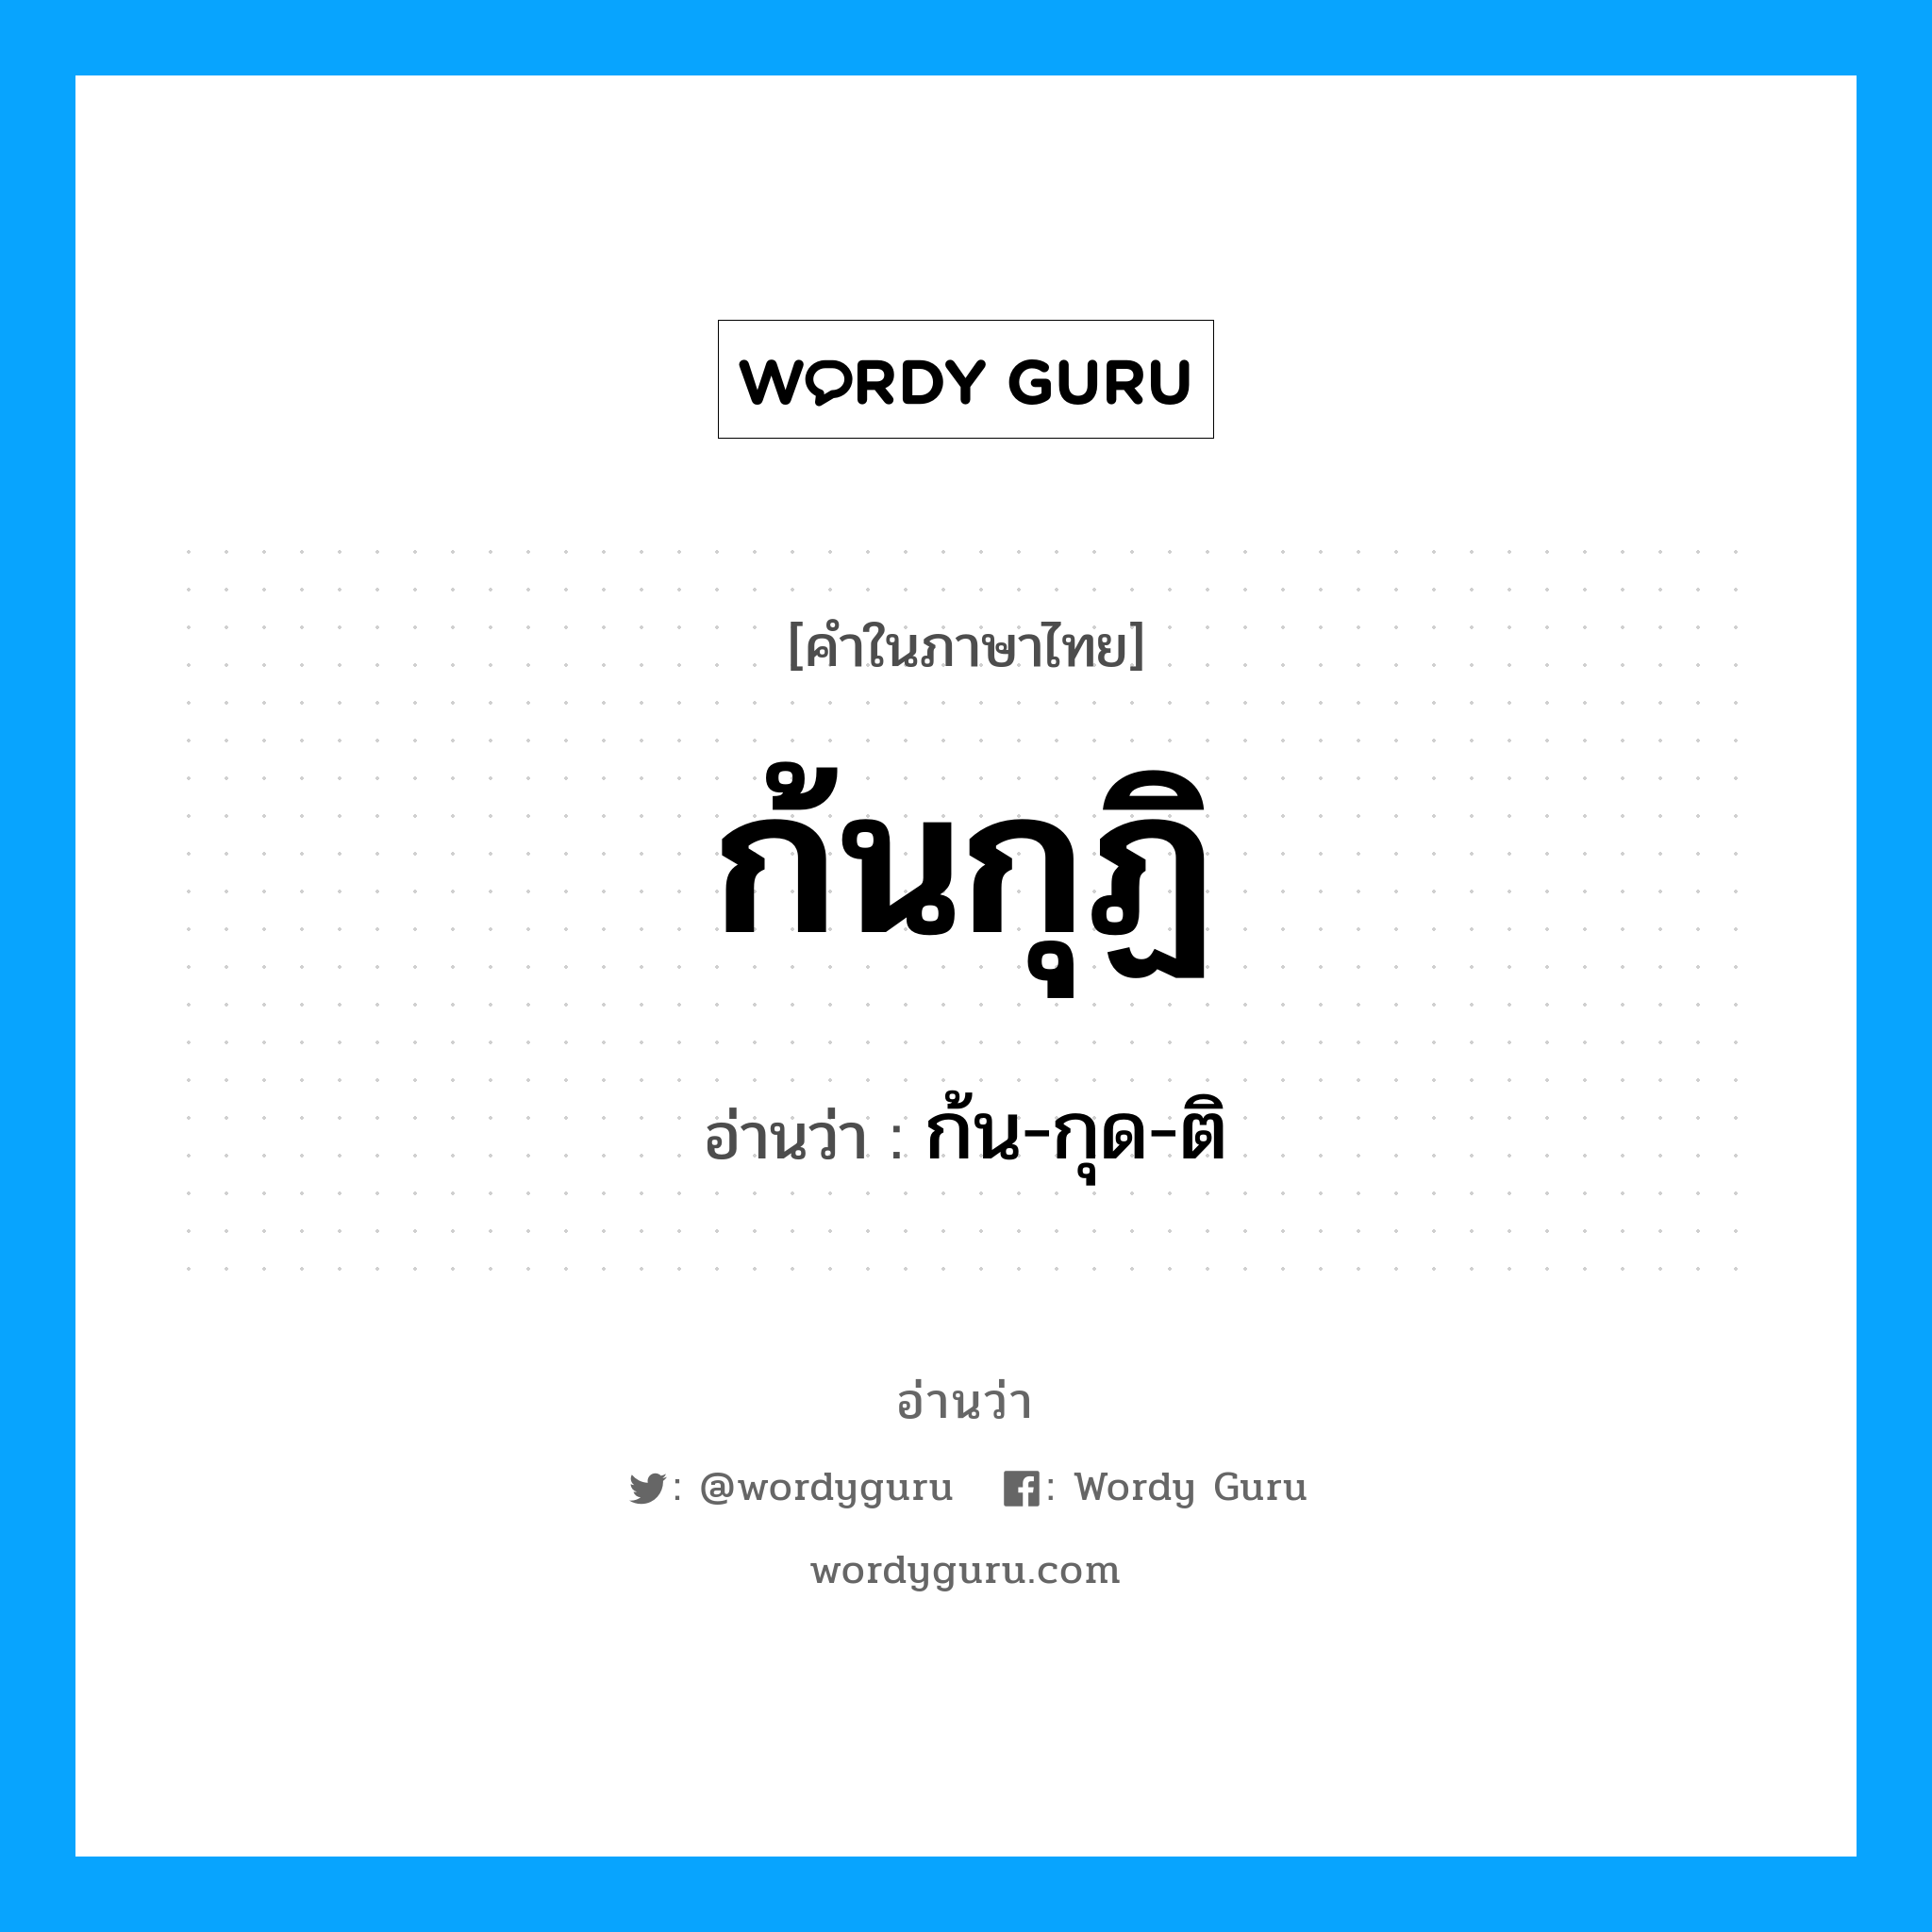 ก้น-กุด-ติ เป็นคำอ่านของคำไหน?, คำในภาษาไทย ก้น-กุด-ติ อ่านว่า ก้นกุฏิ